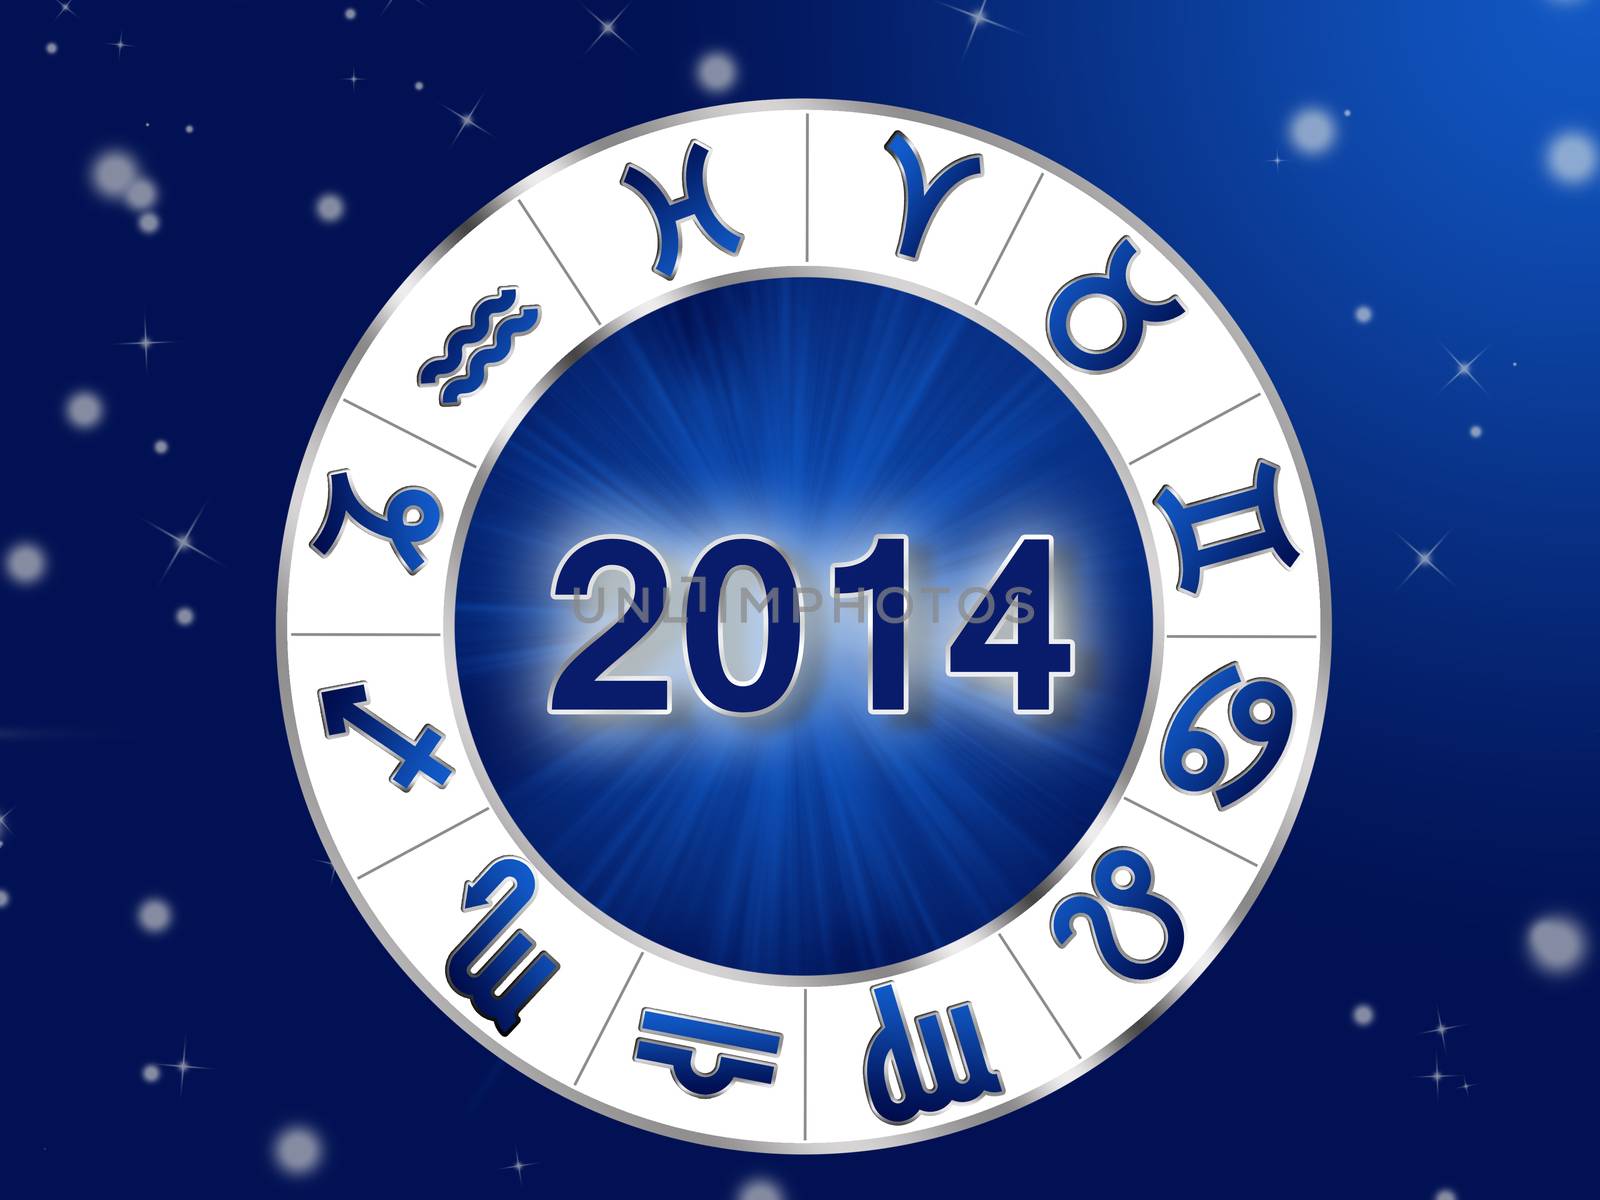 2014 Horoscope by Dddaca